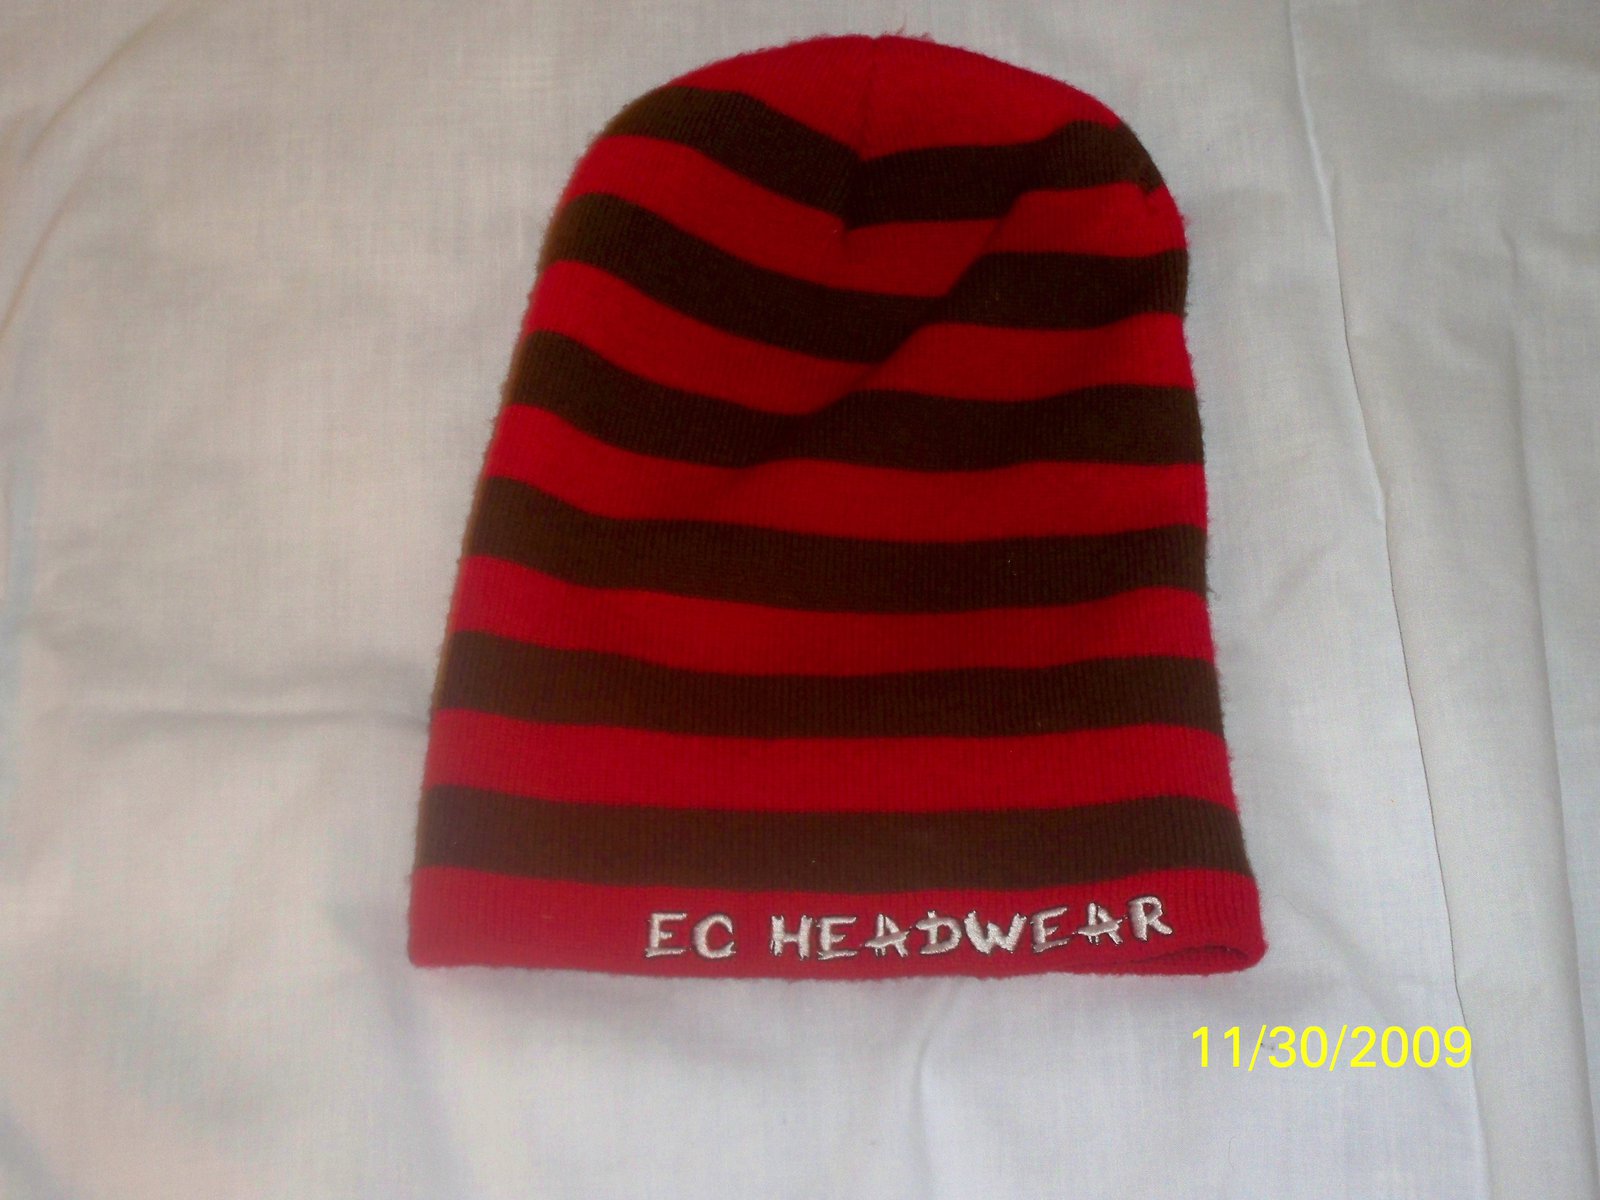 EC HEADWEAR